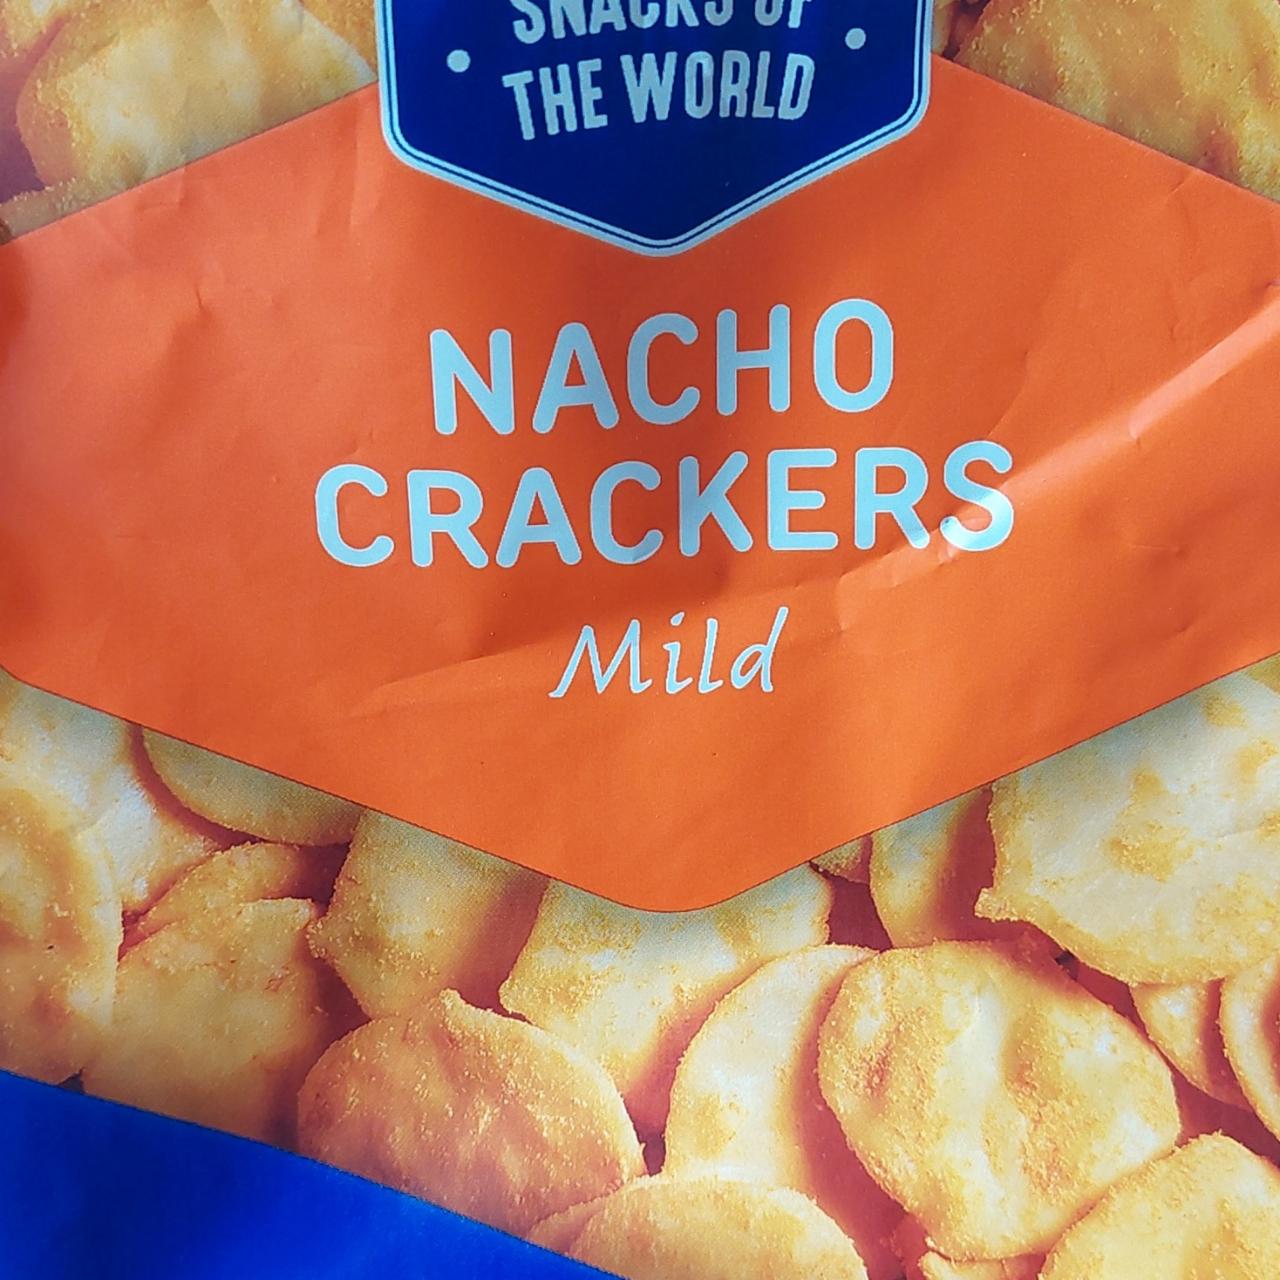 Zdjęcia - Krakersy nacho crackers mild Snacks of the world